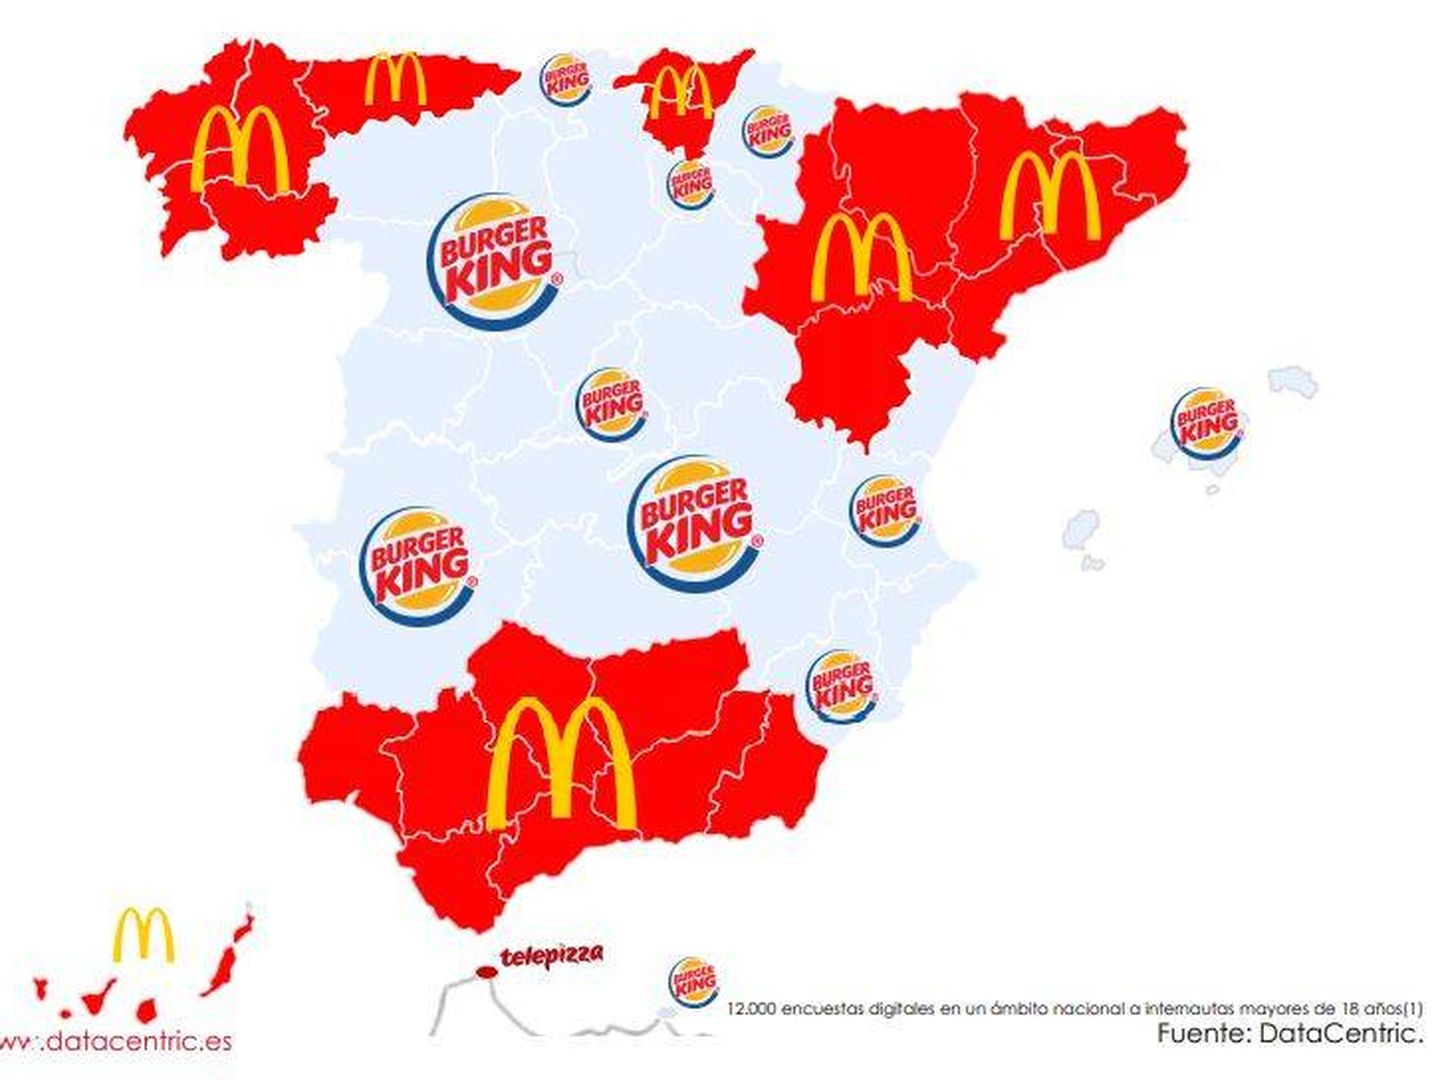 Las marcas de comida rápida que prefieren los españoles .(DataCentric)